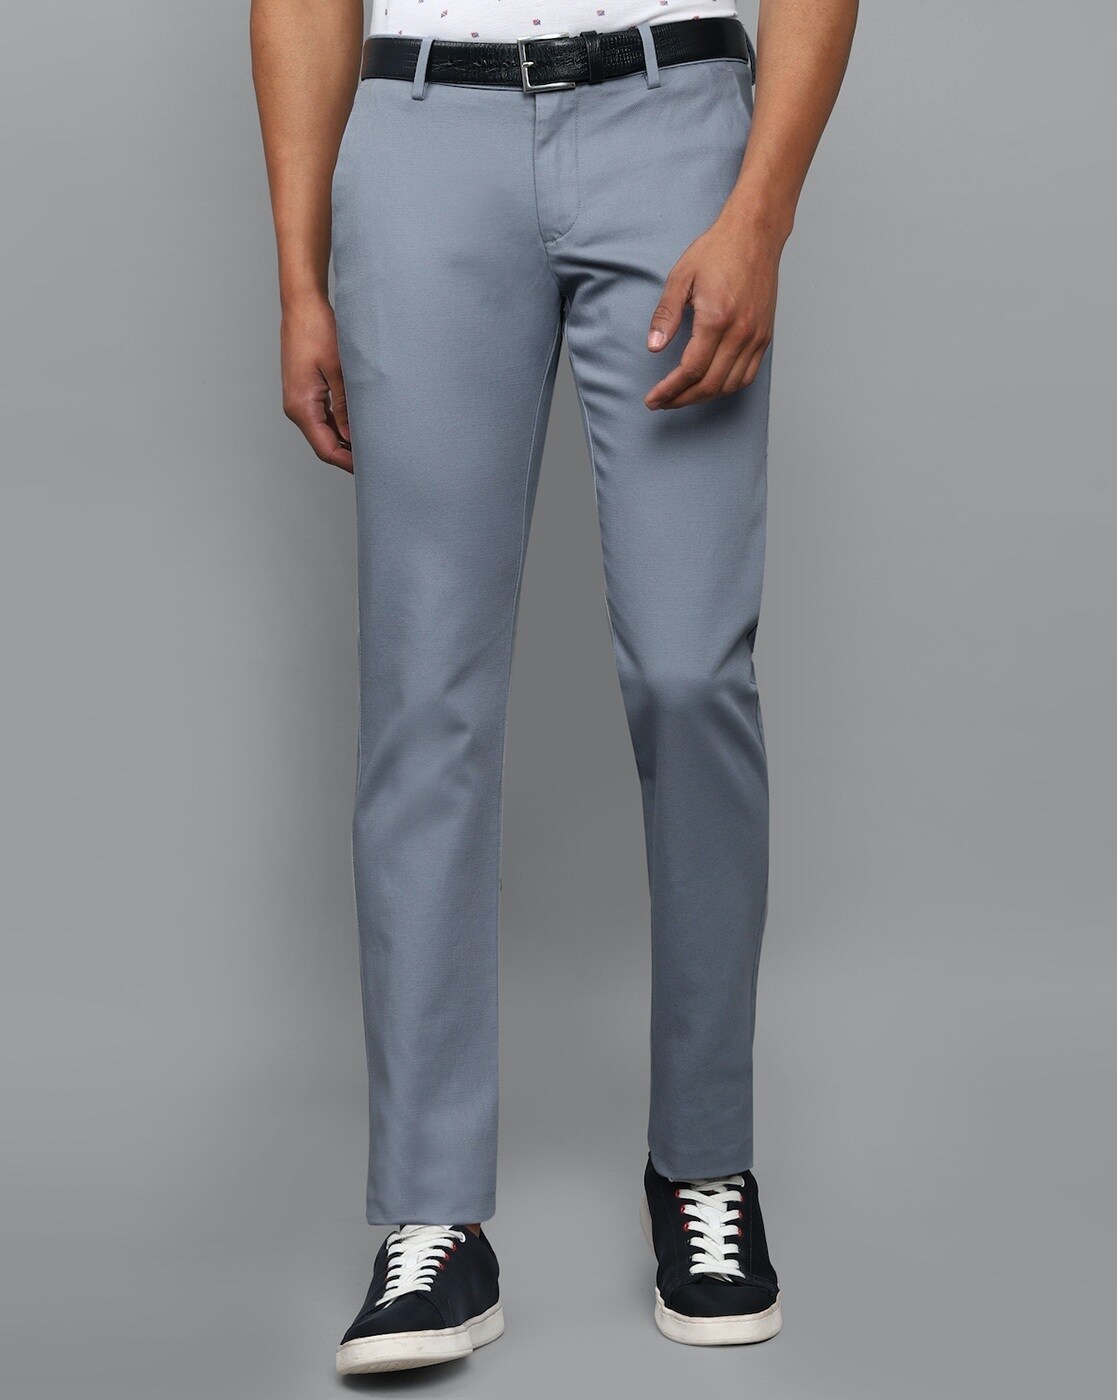 Buy Blue Trousers  Pants for Men by ALLEN SOLLY Online  Ajiocom